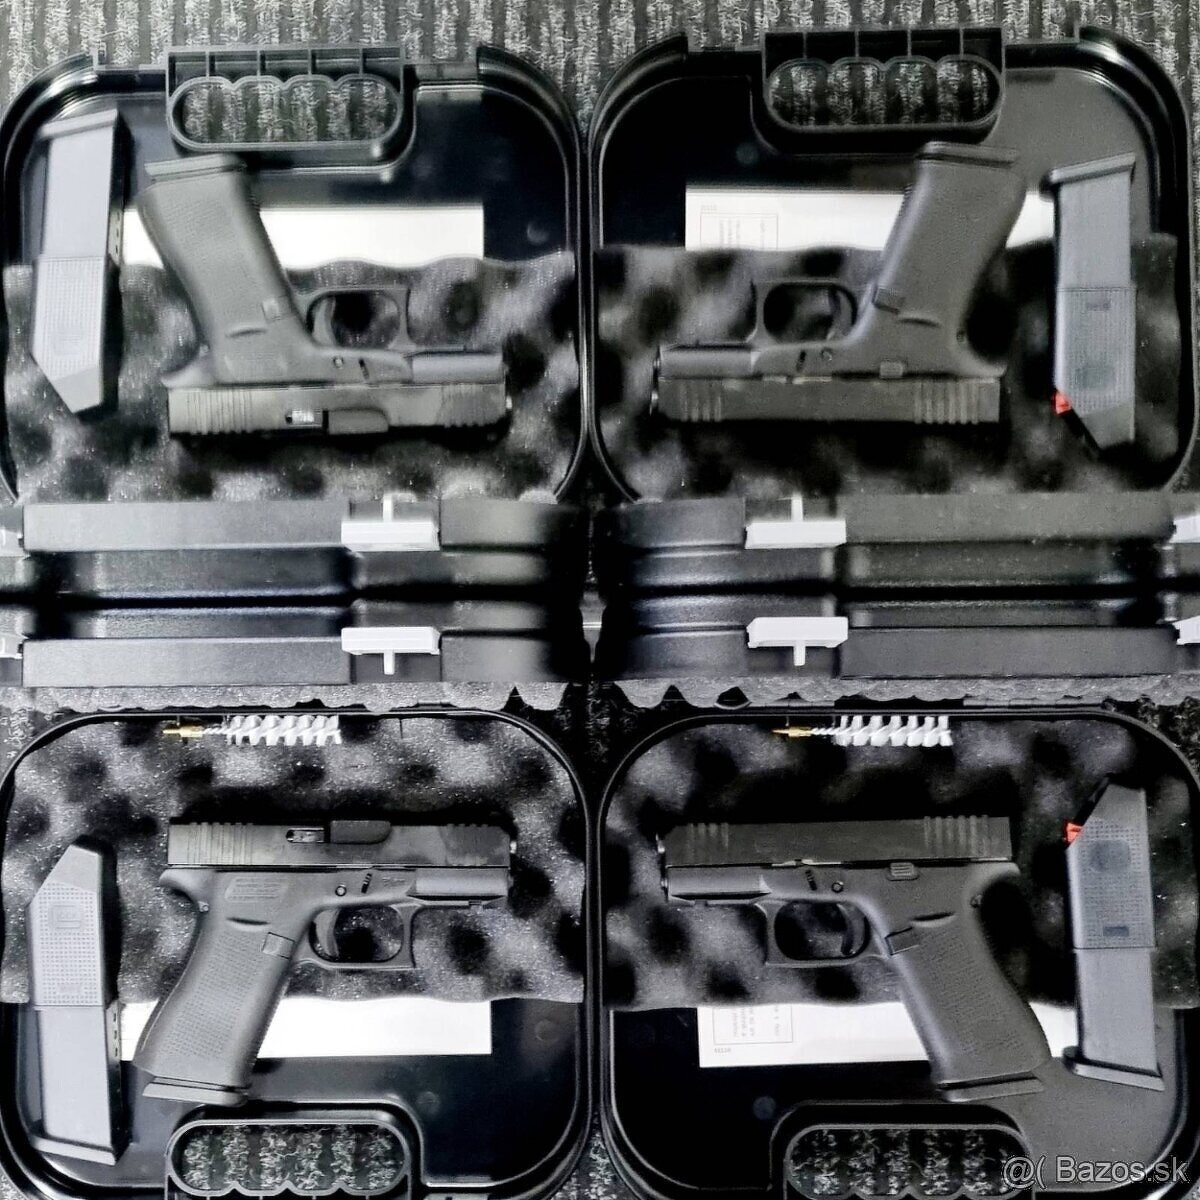 Glock 43X aj MOS, Glock 29 Gen.4 FDX